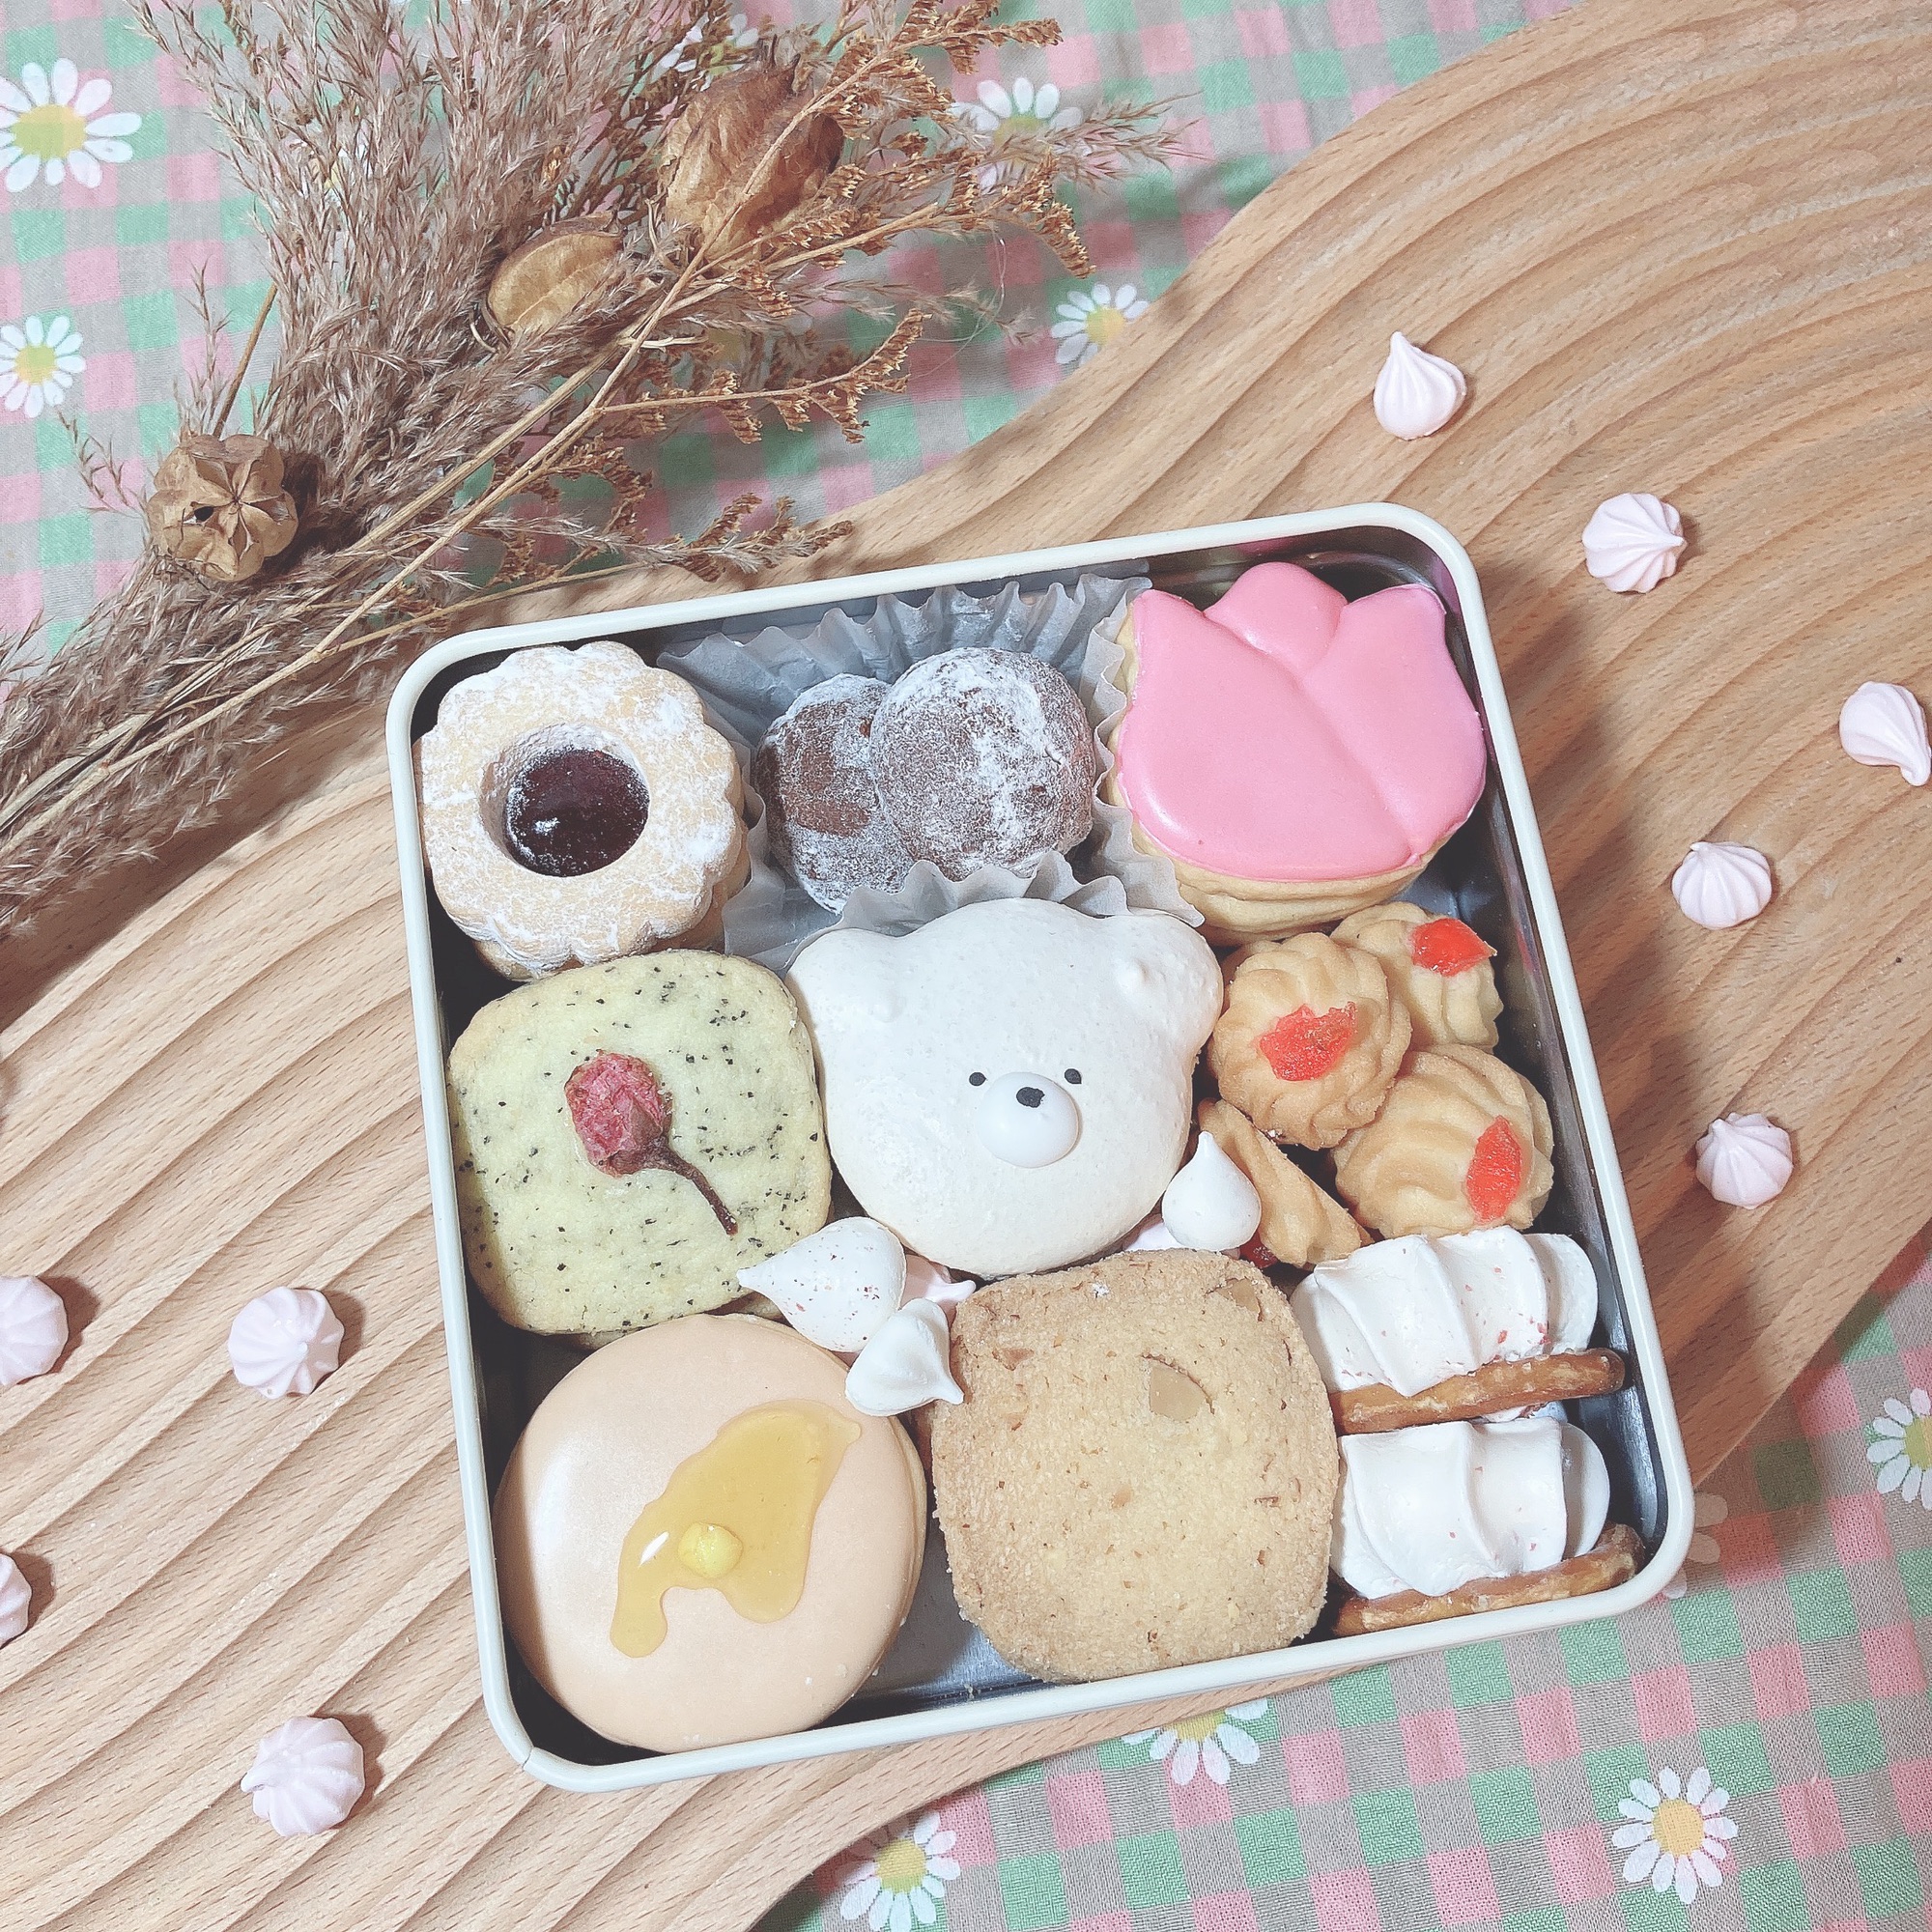 クマとお花のアイシングクッキー缶→完売